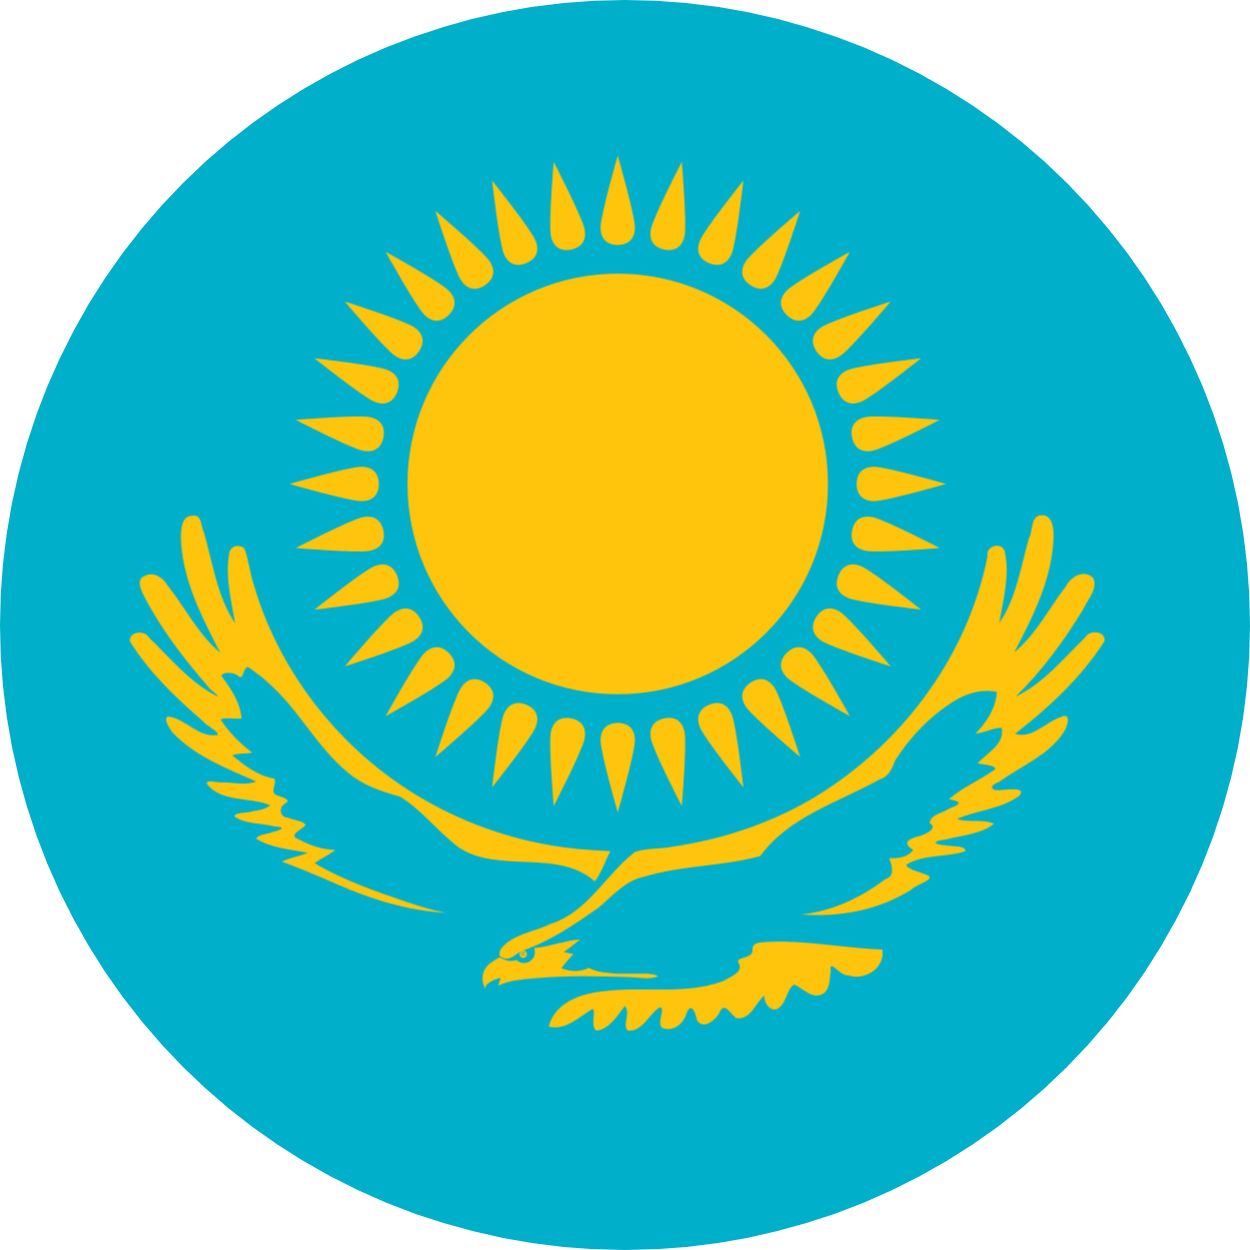 Kazakhstan flag emoji ðð â flags web